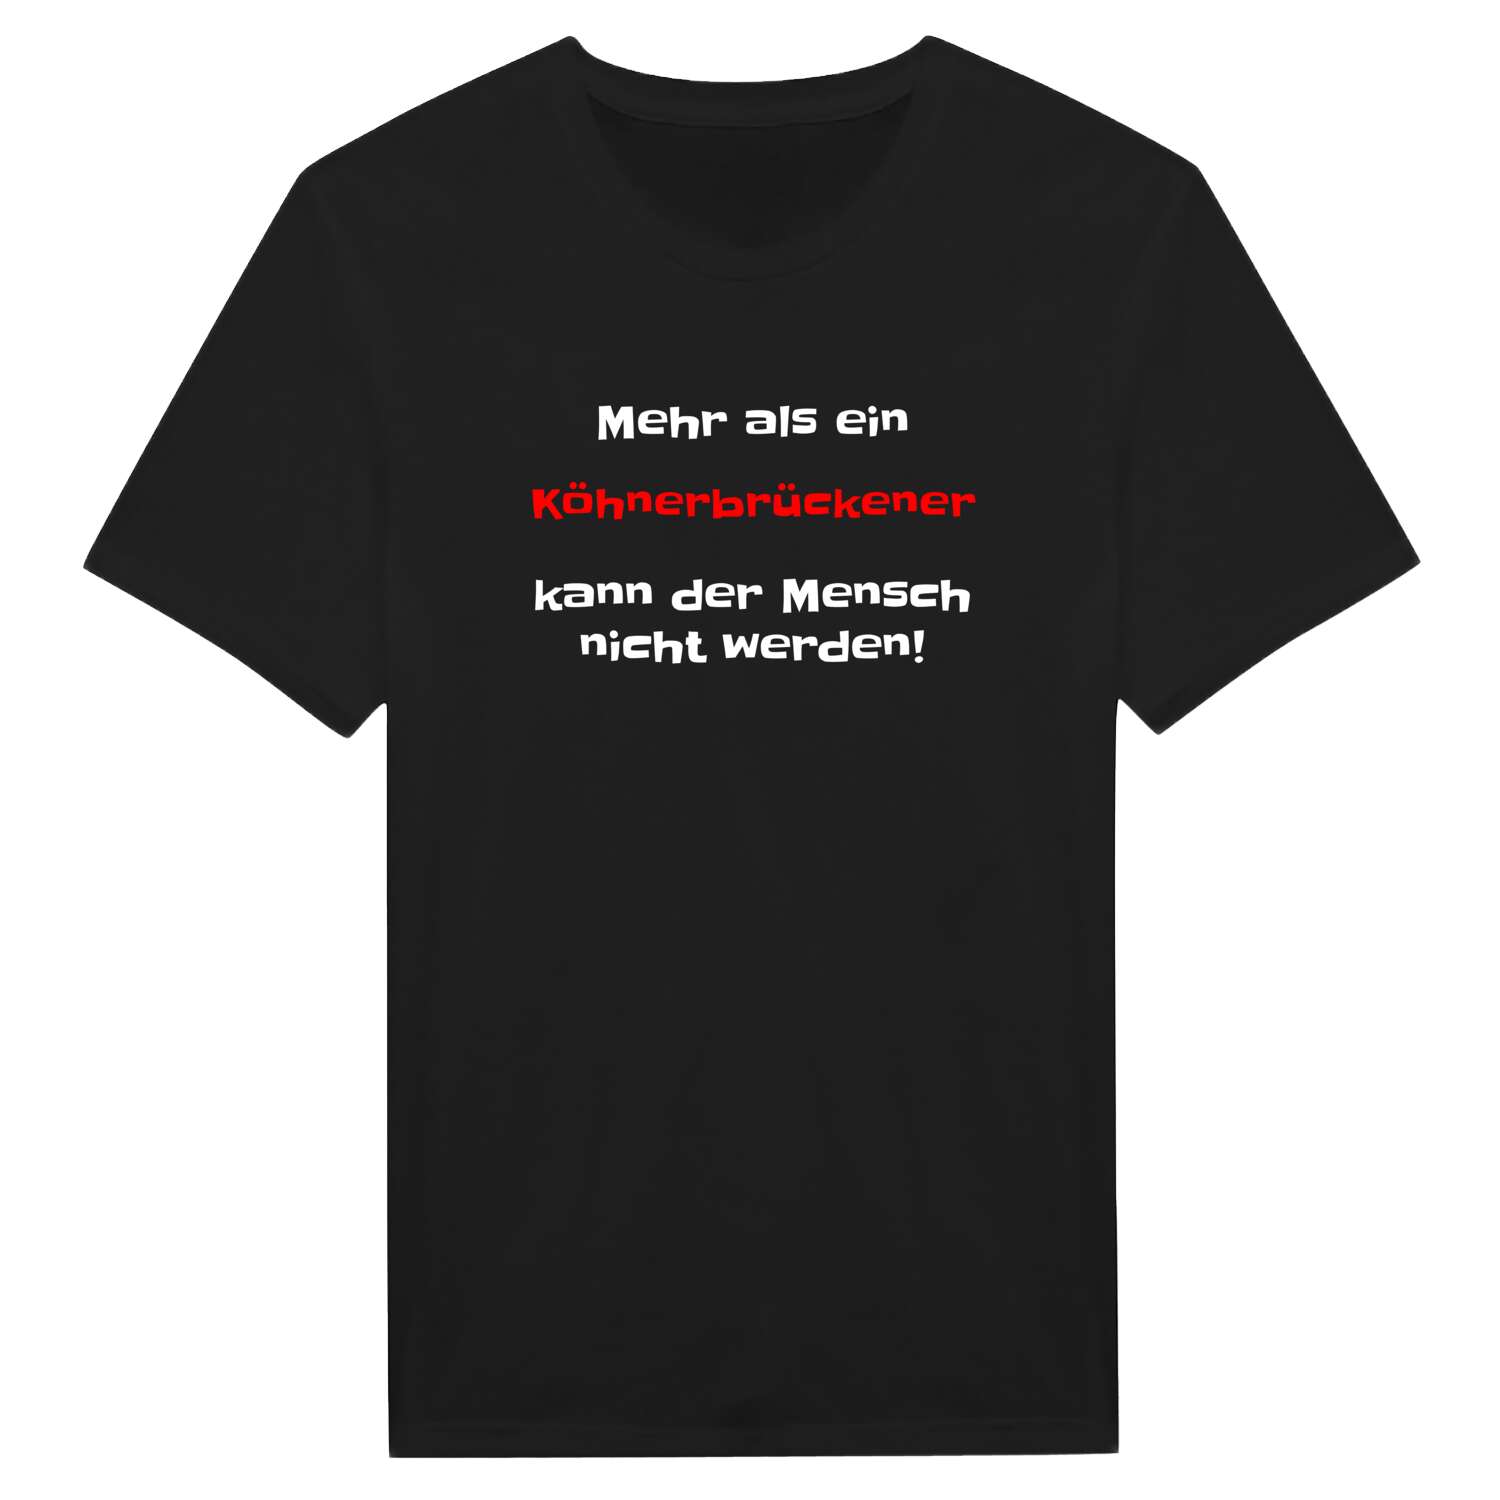 Köhnerbrücke T-Shirt »Mehr als ein«